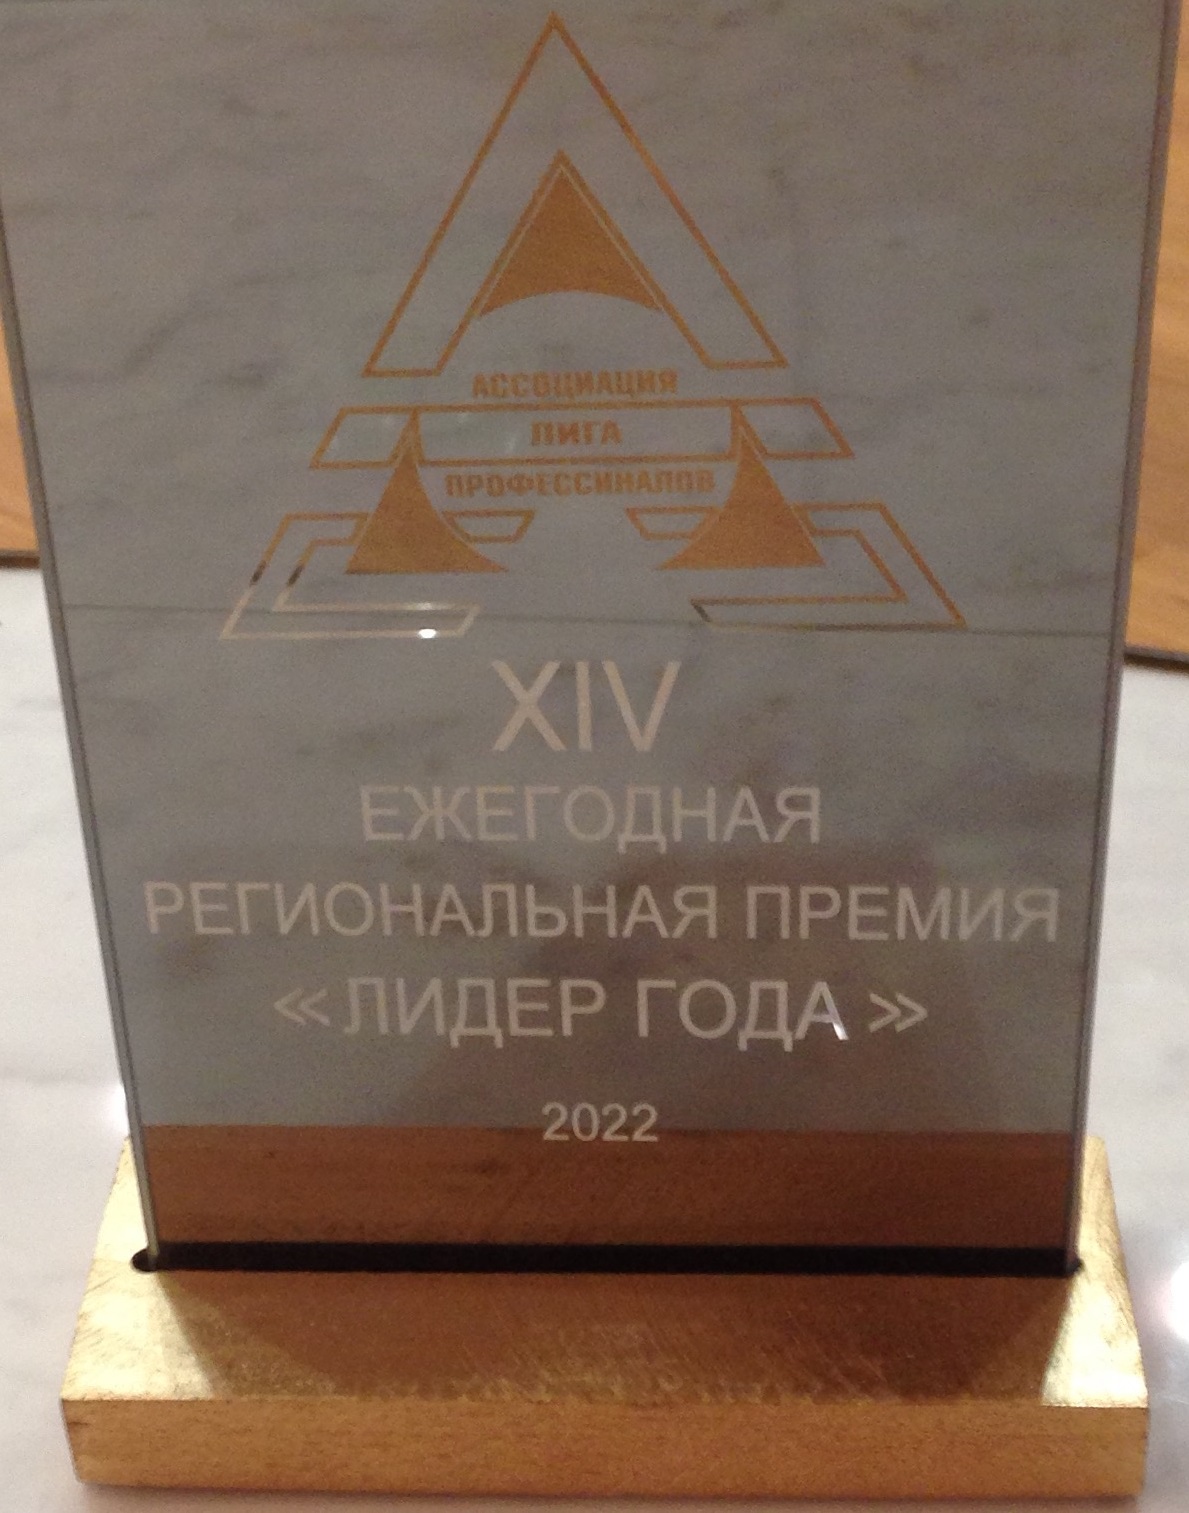 Сарклиник - победитель премии Лидер года 2022